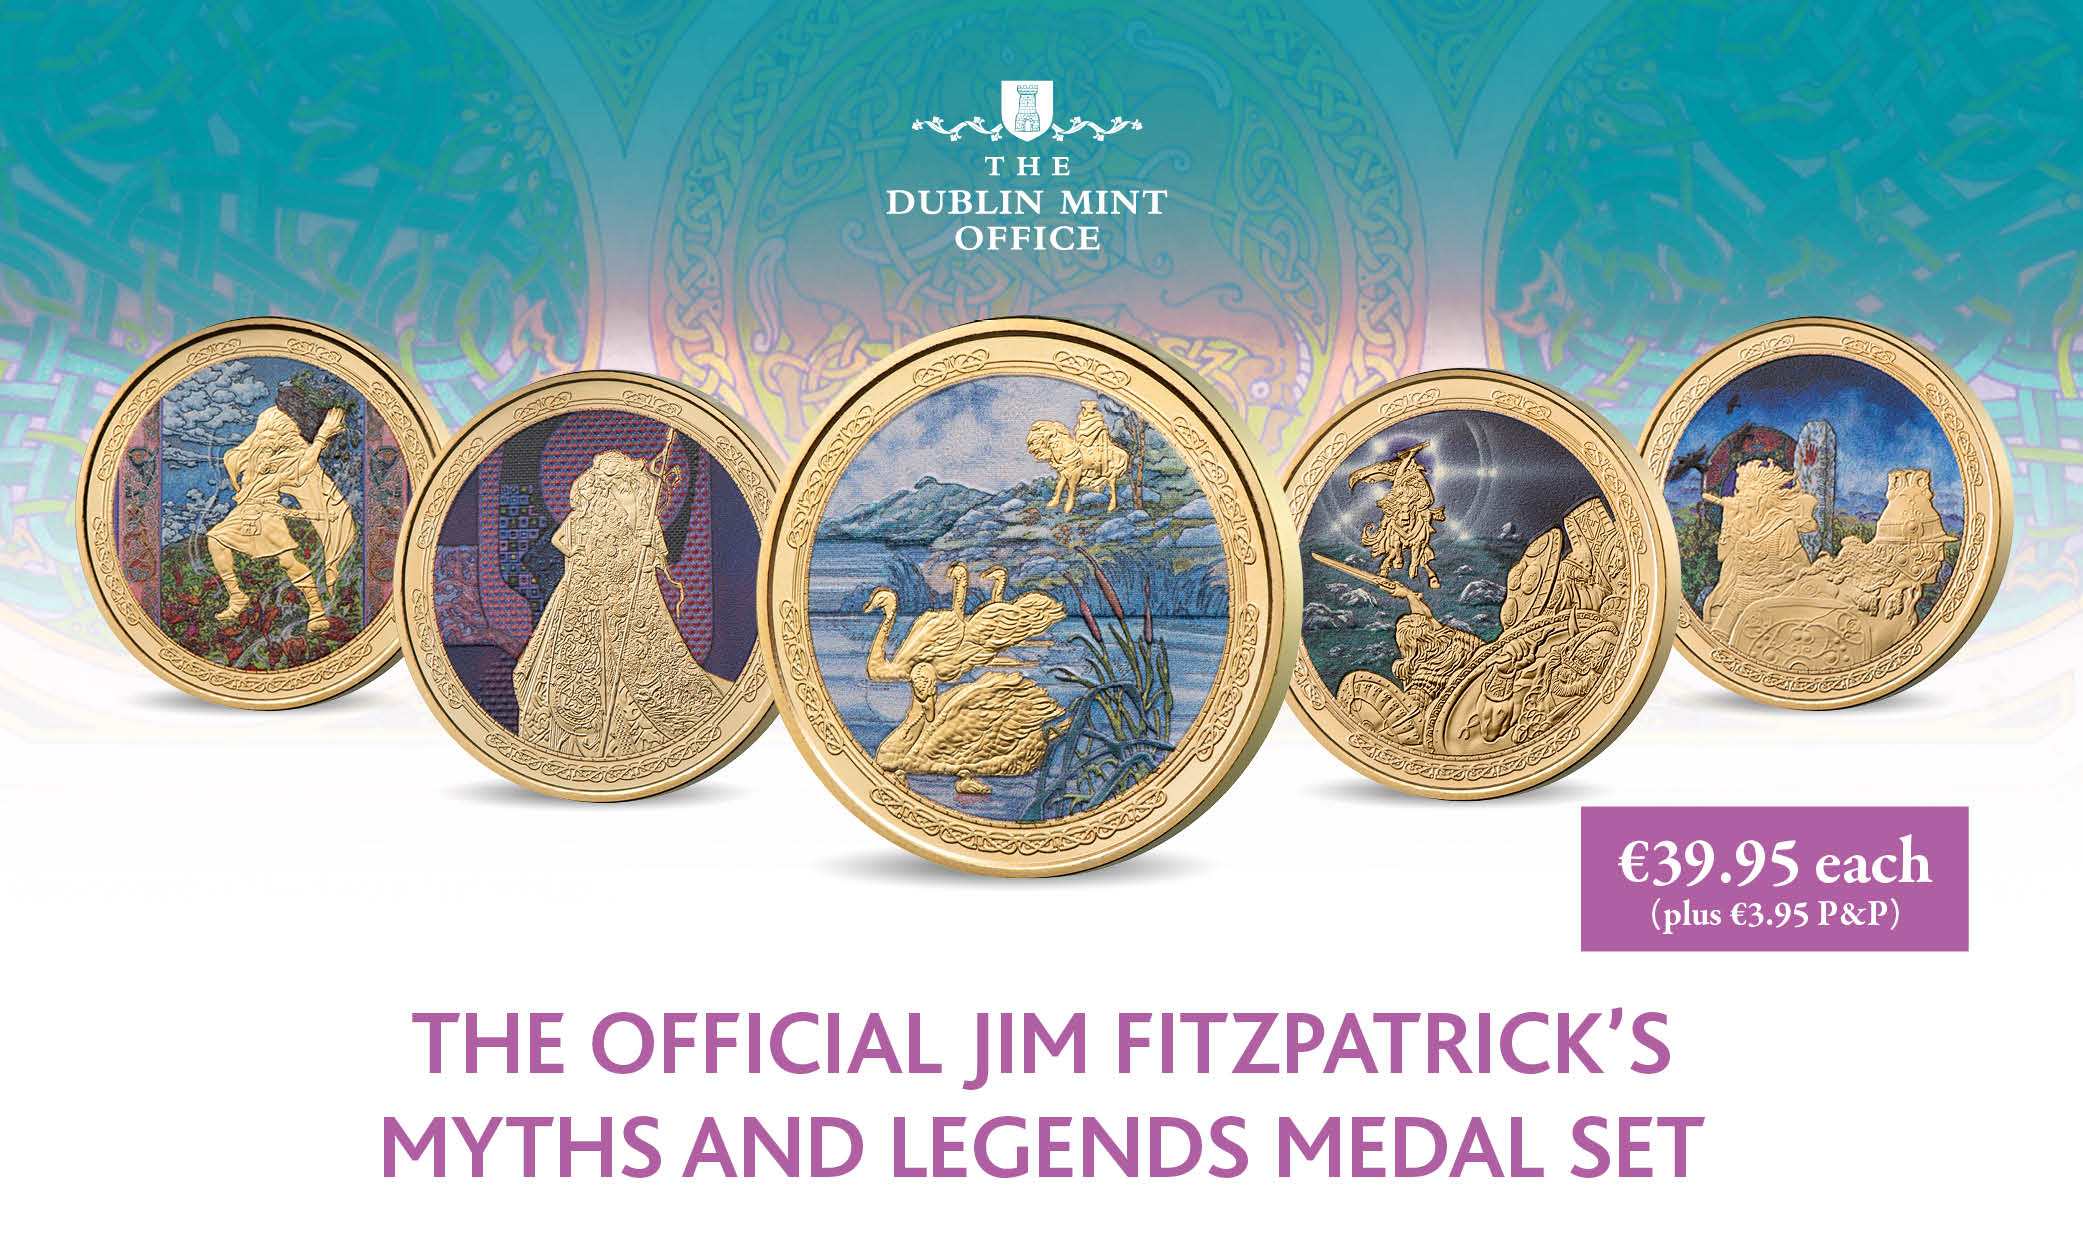 The Myths & Legends Medal Set